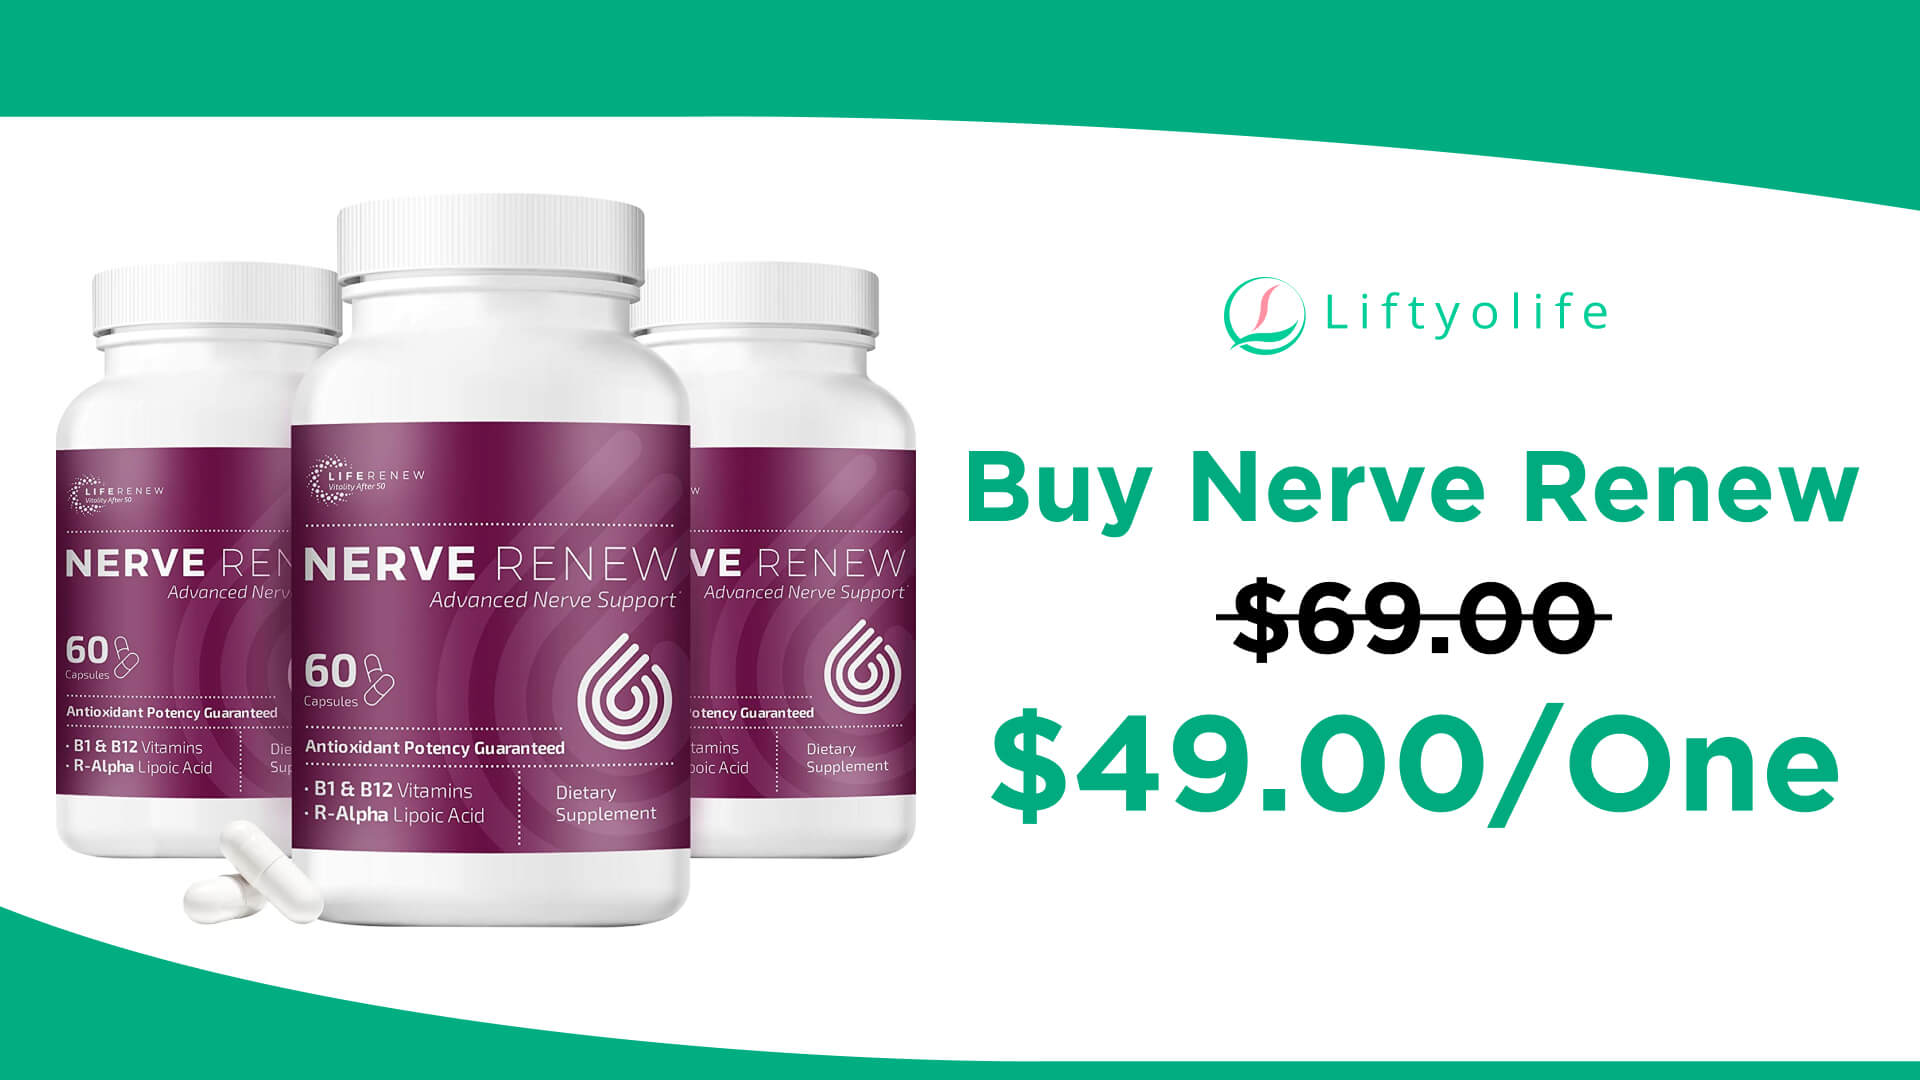 Buy Nerve Renew at $49